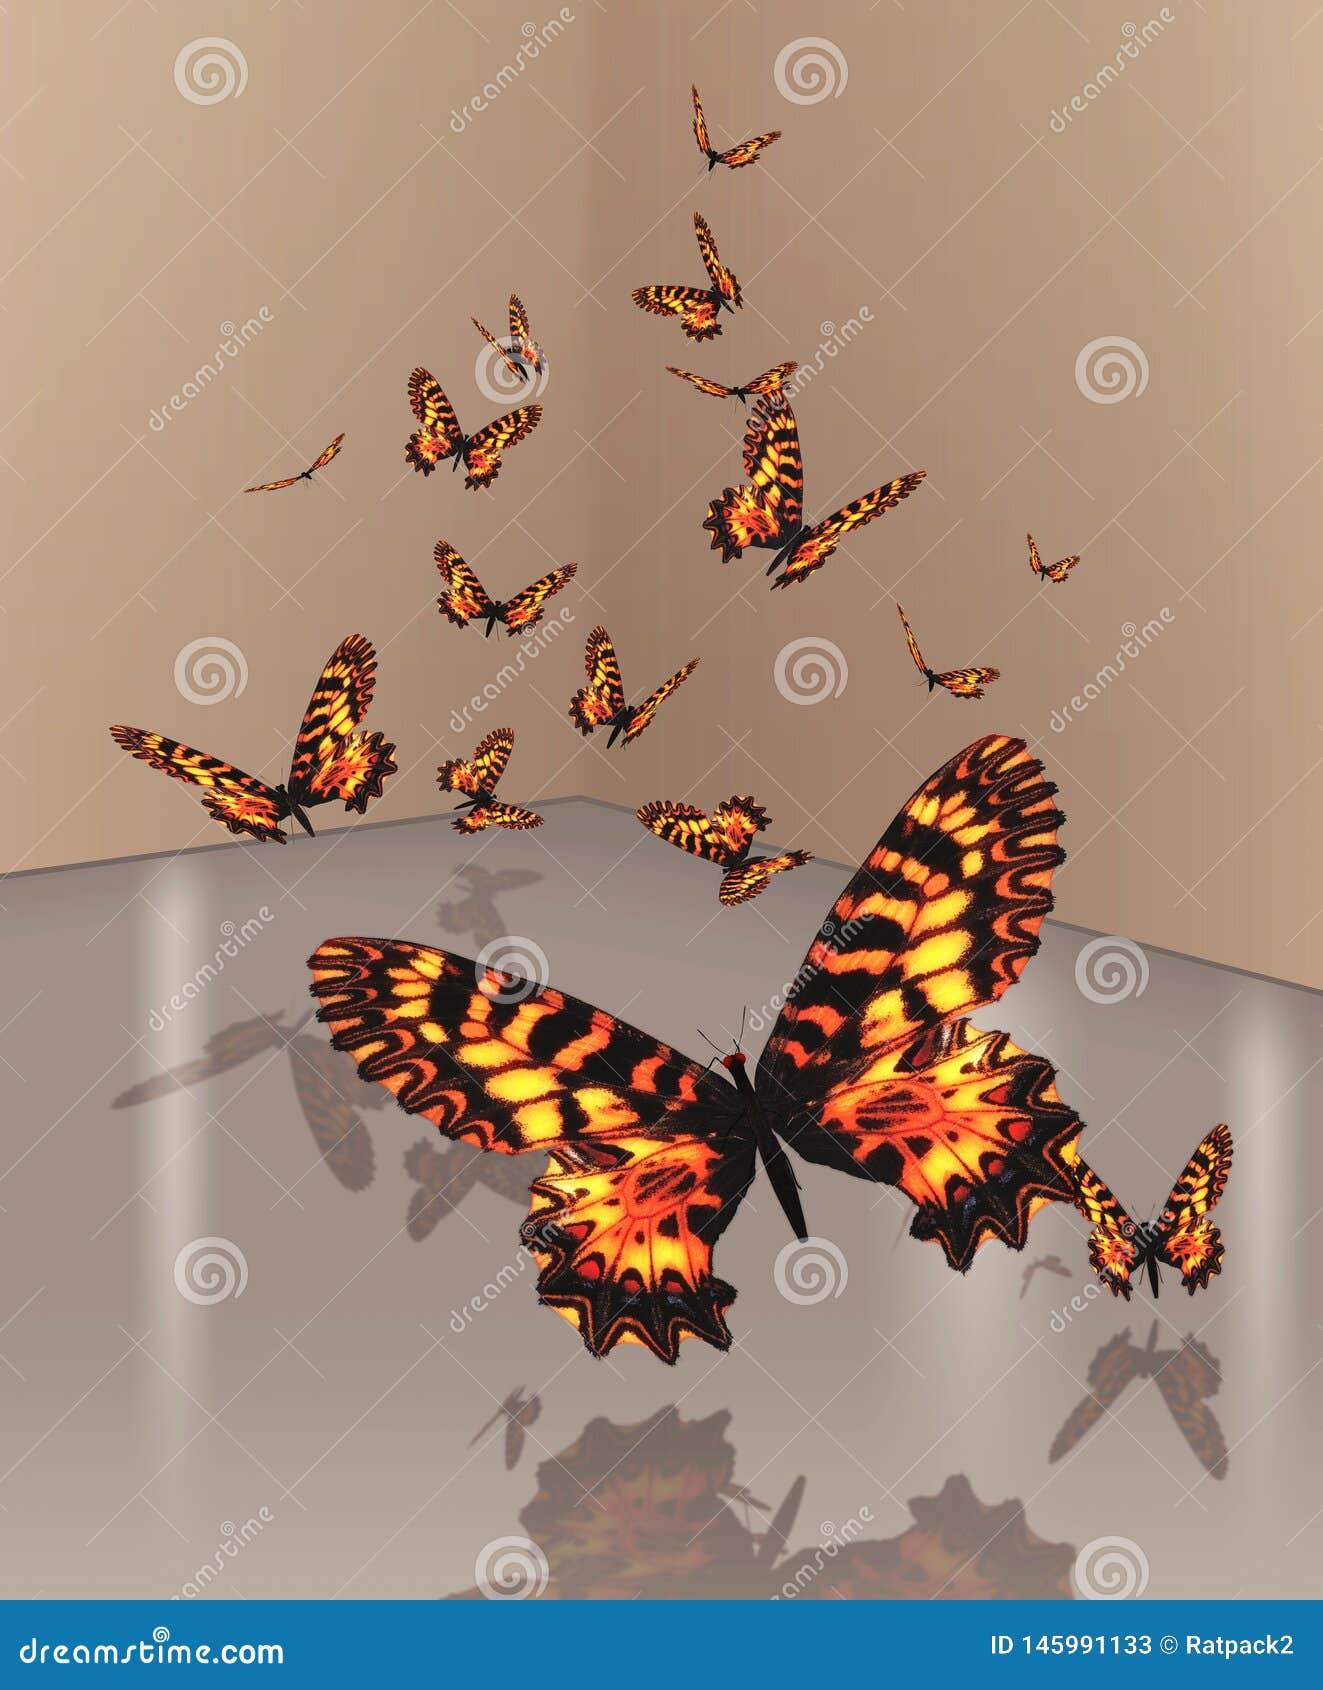 a flutter of orange butterflies